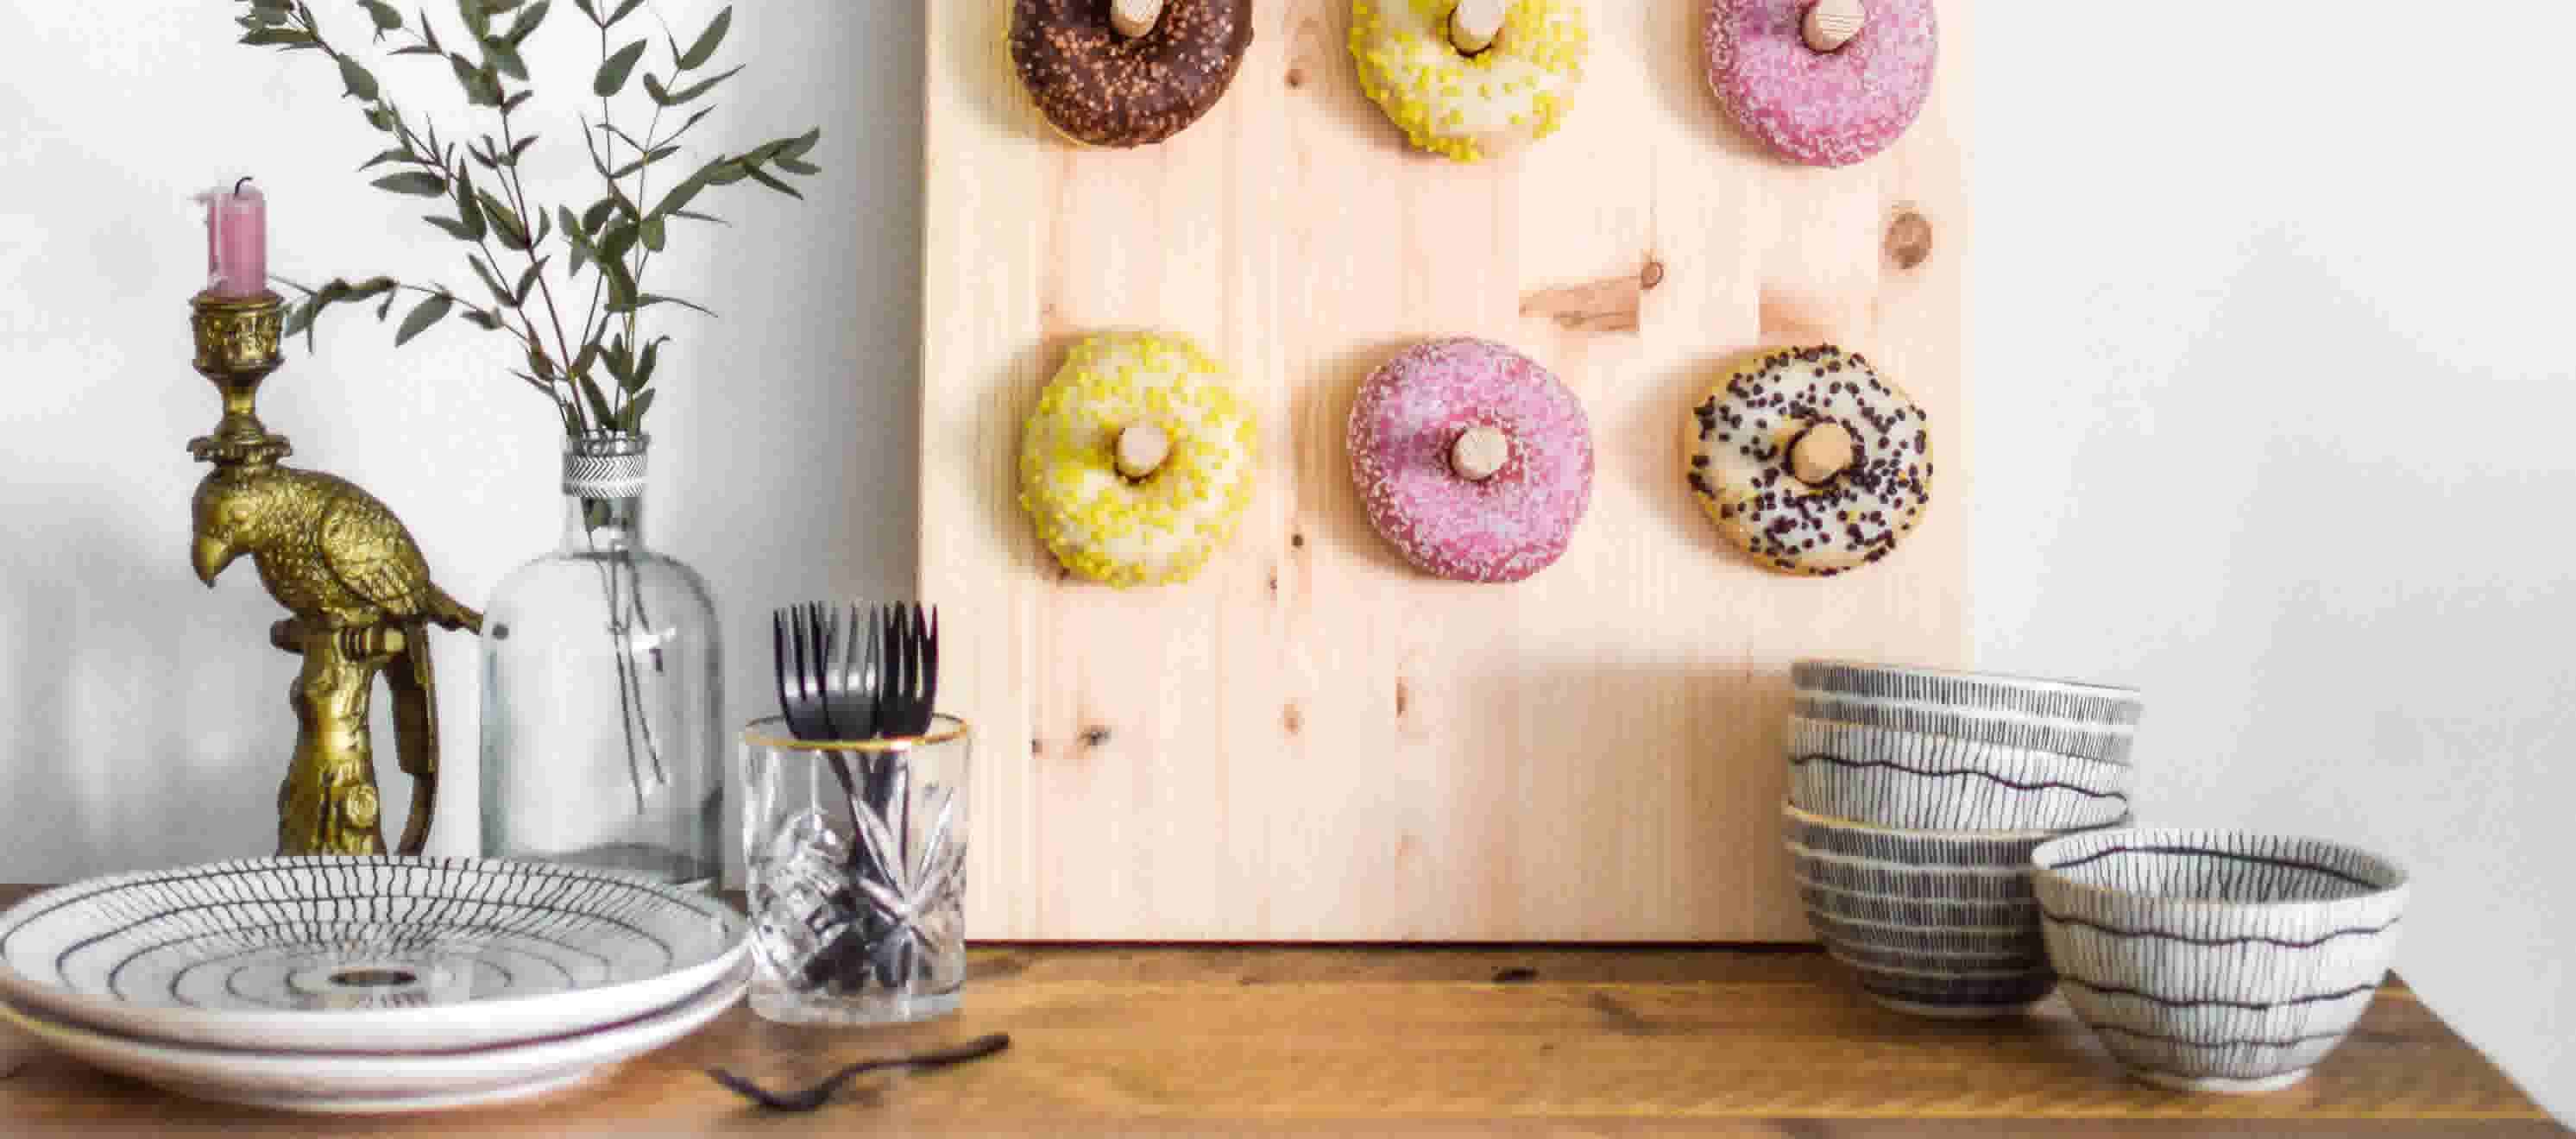 Traktatie idee: maak een donut bord 